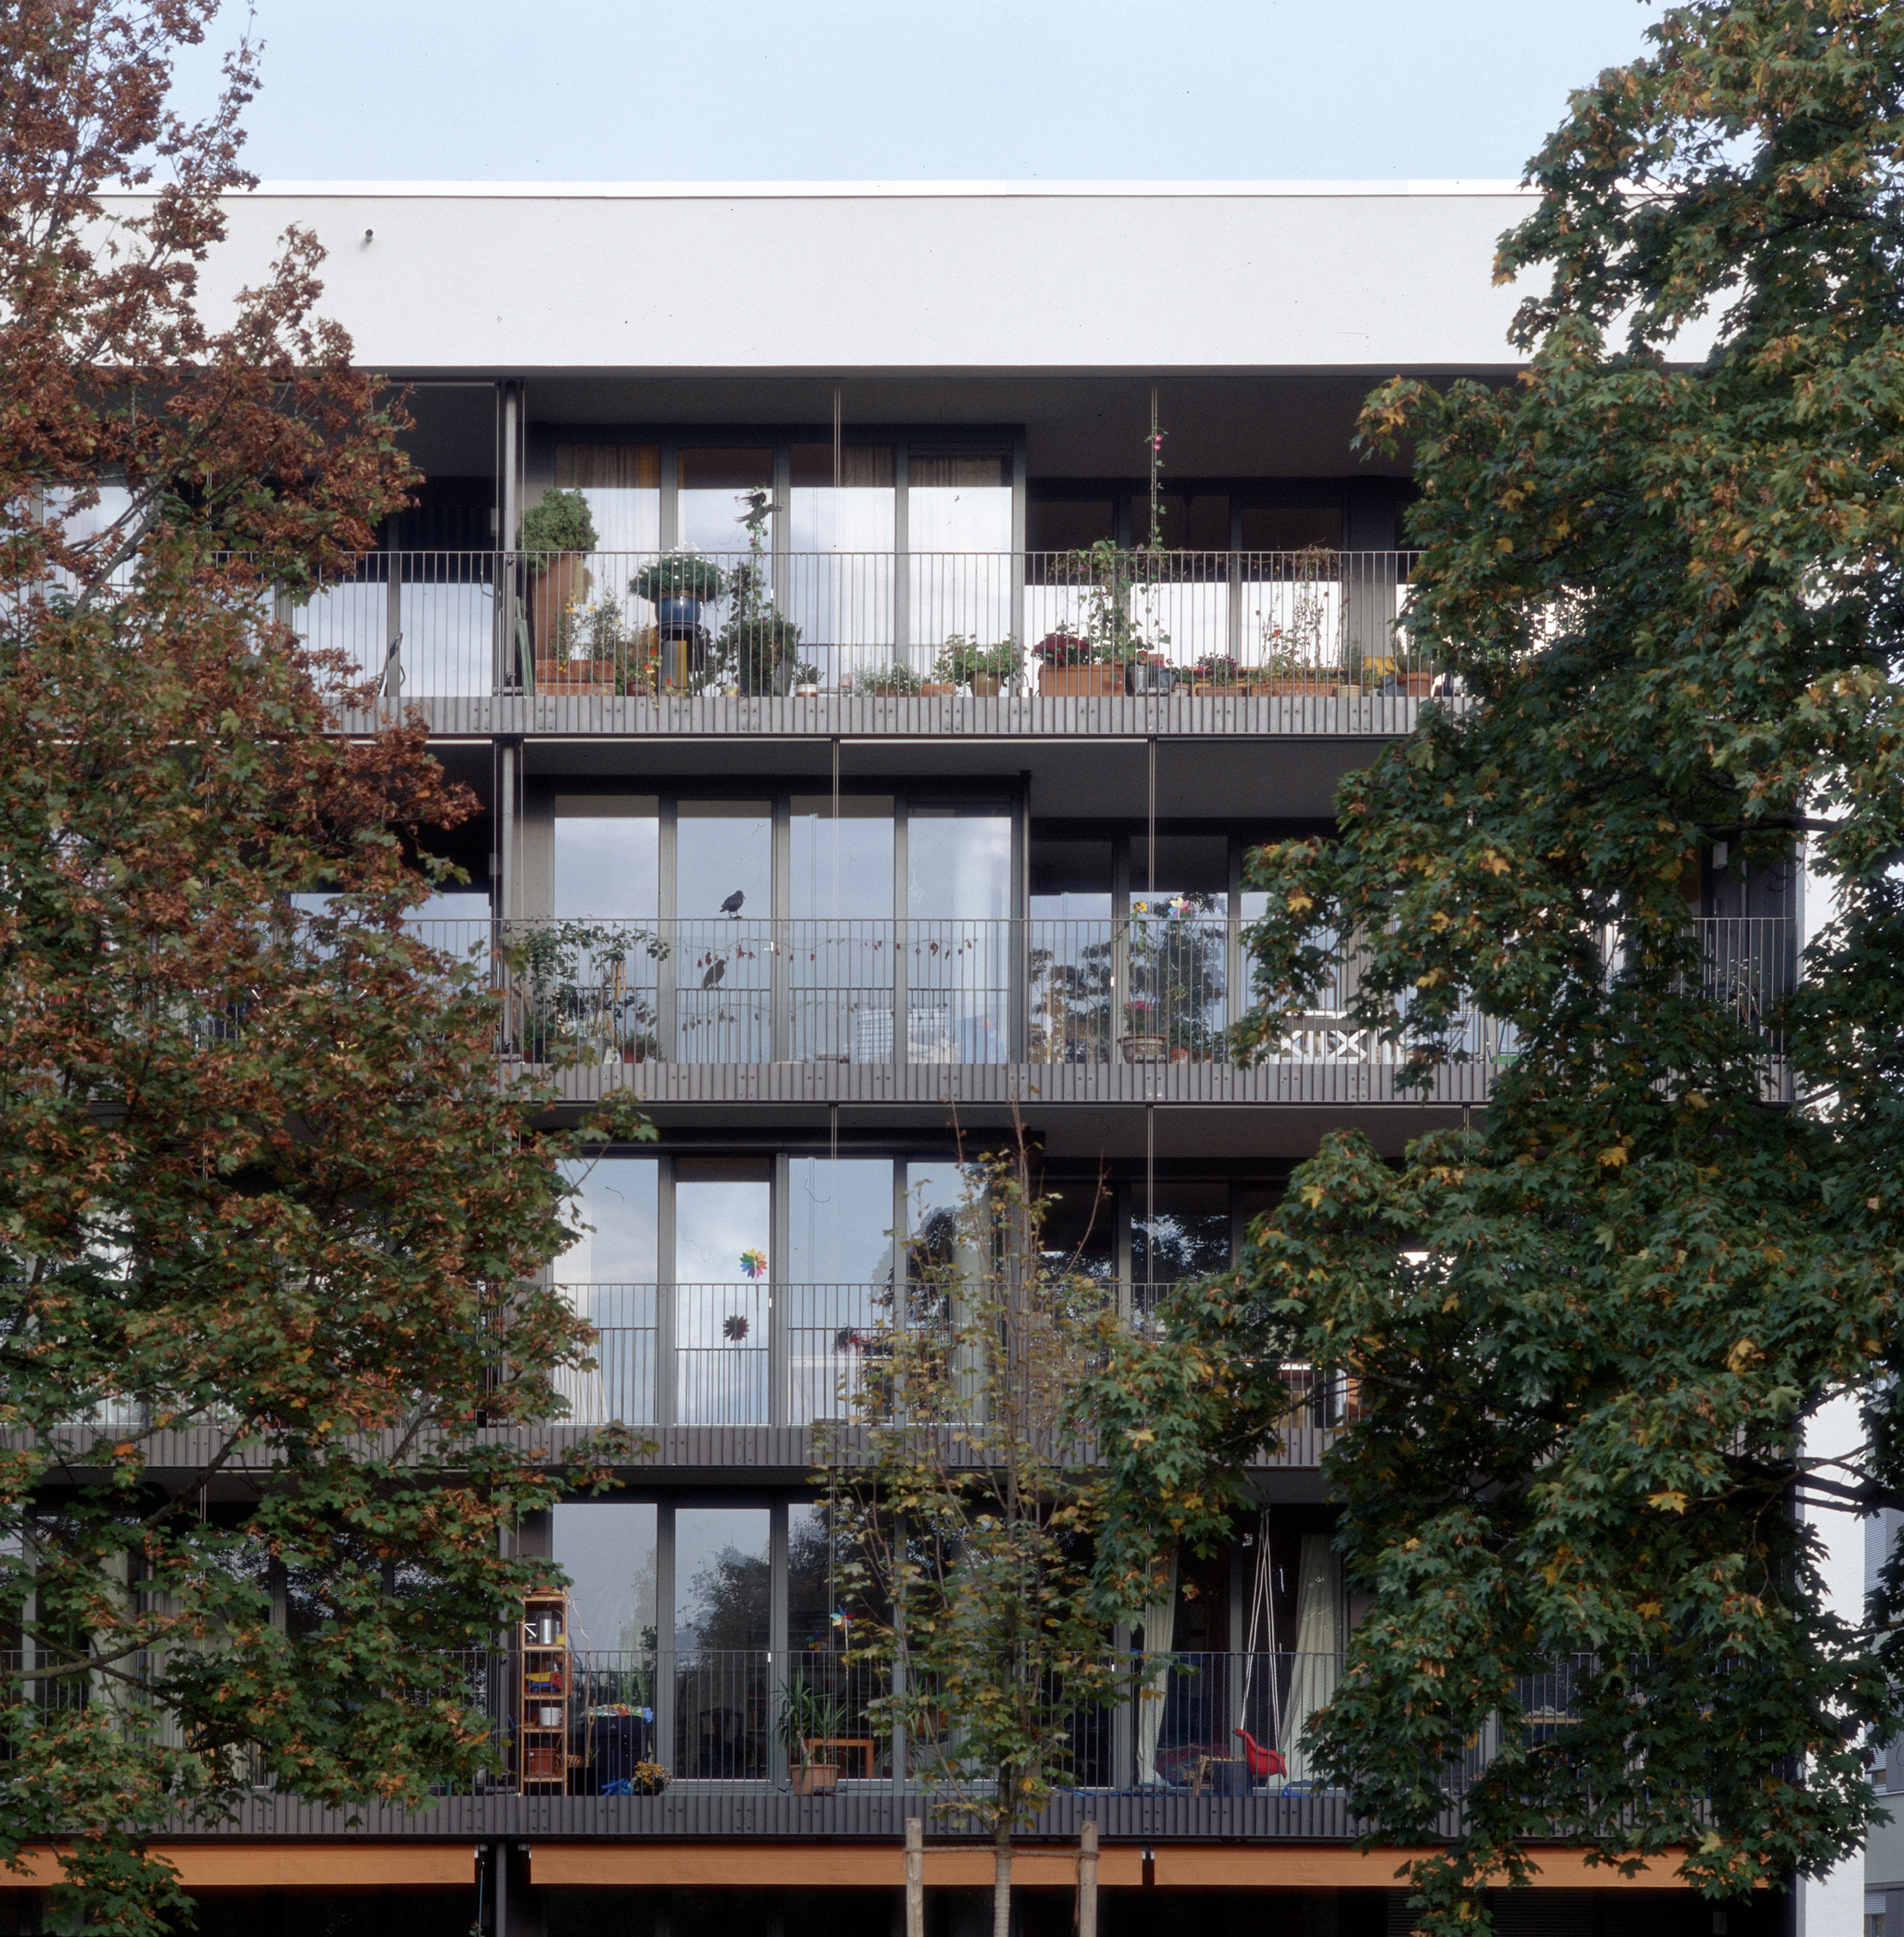 Wohnbebauung Ackermannbogen, München, Gebäude F1